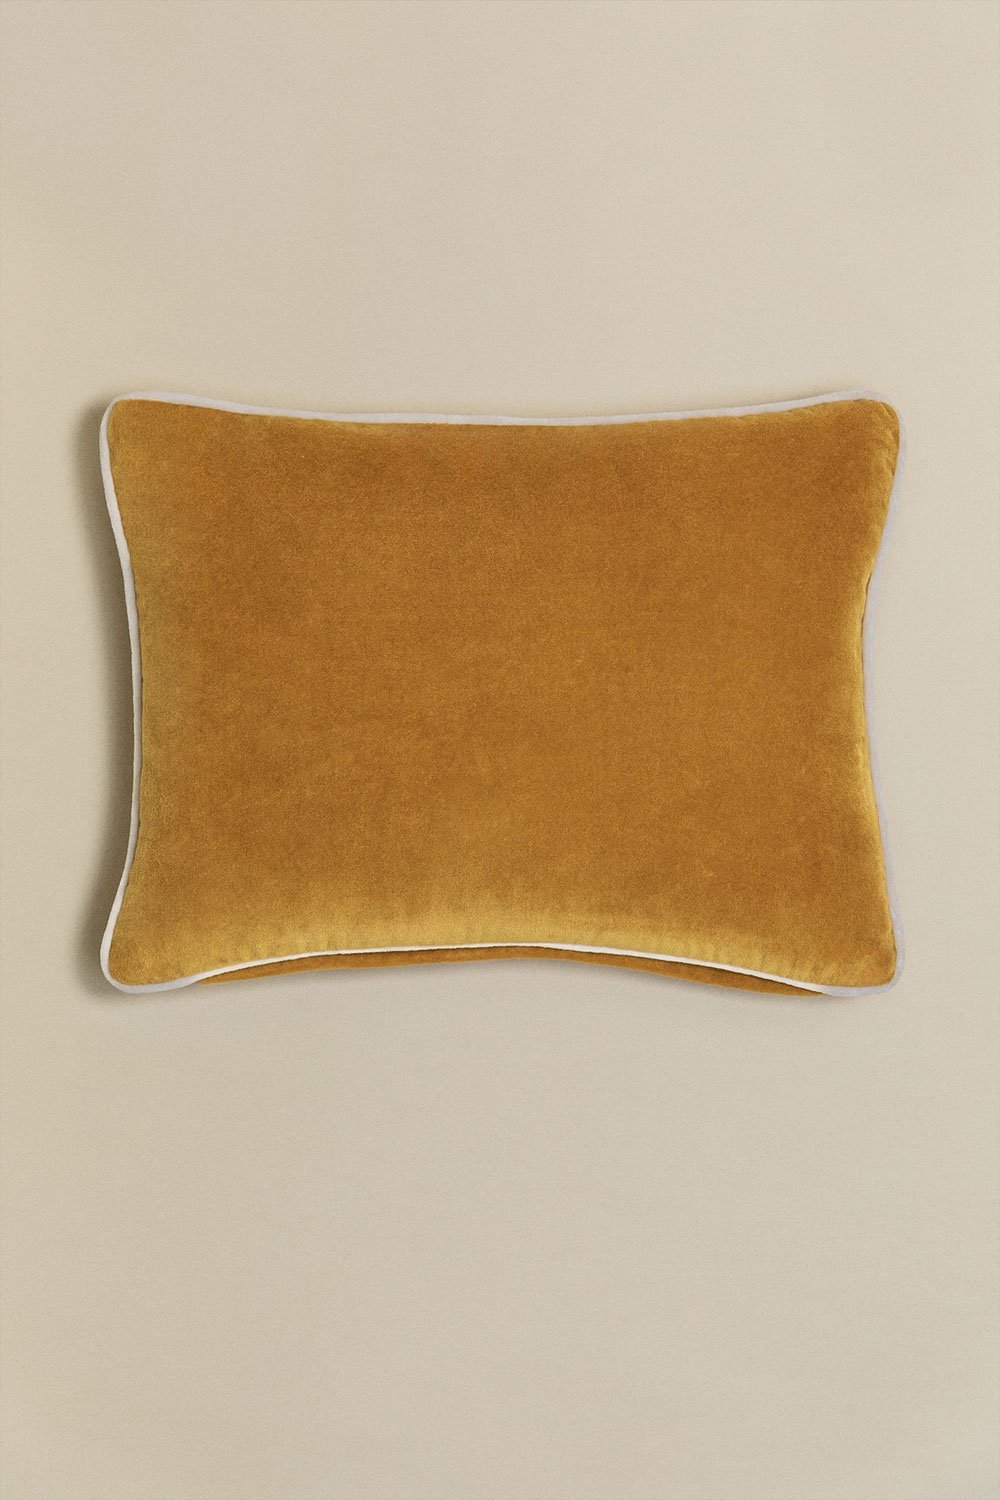 Cuscino rettangolare in velluto (30x40 cm) Trincy, immagine della galleria 1